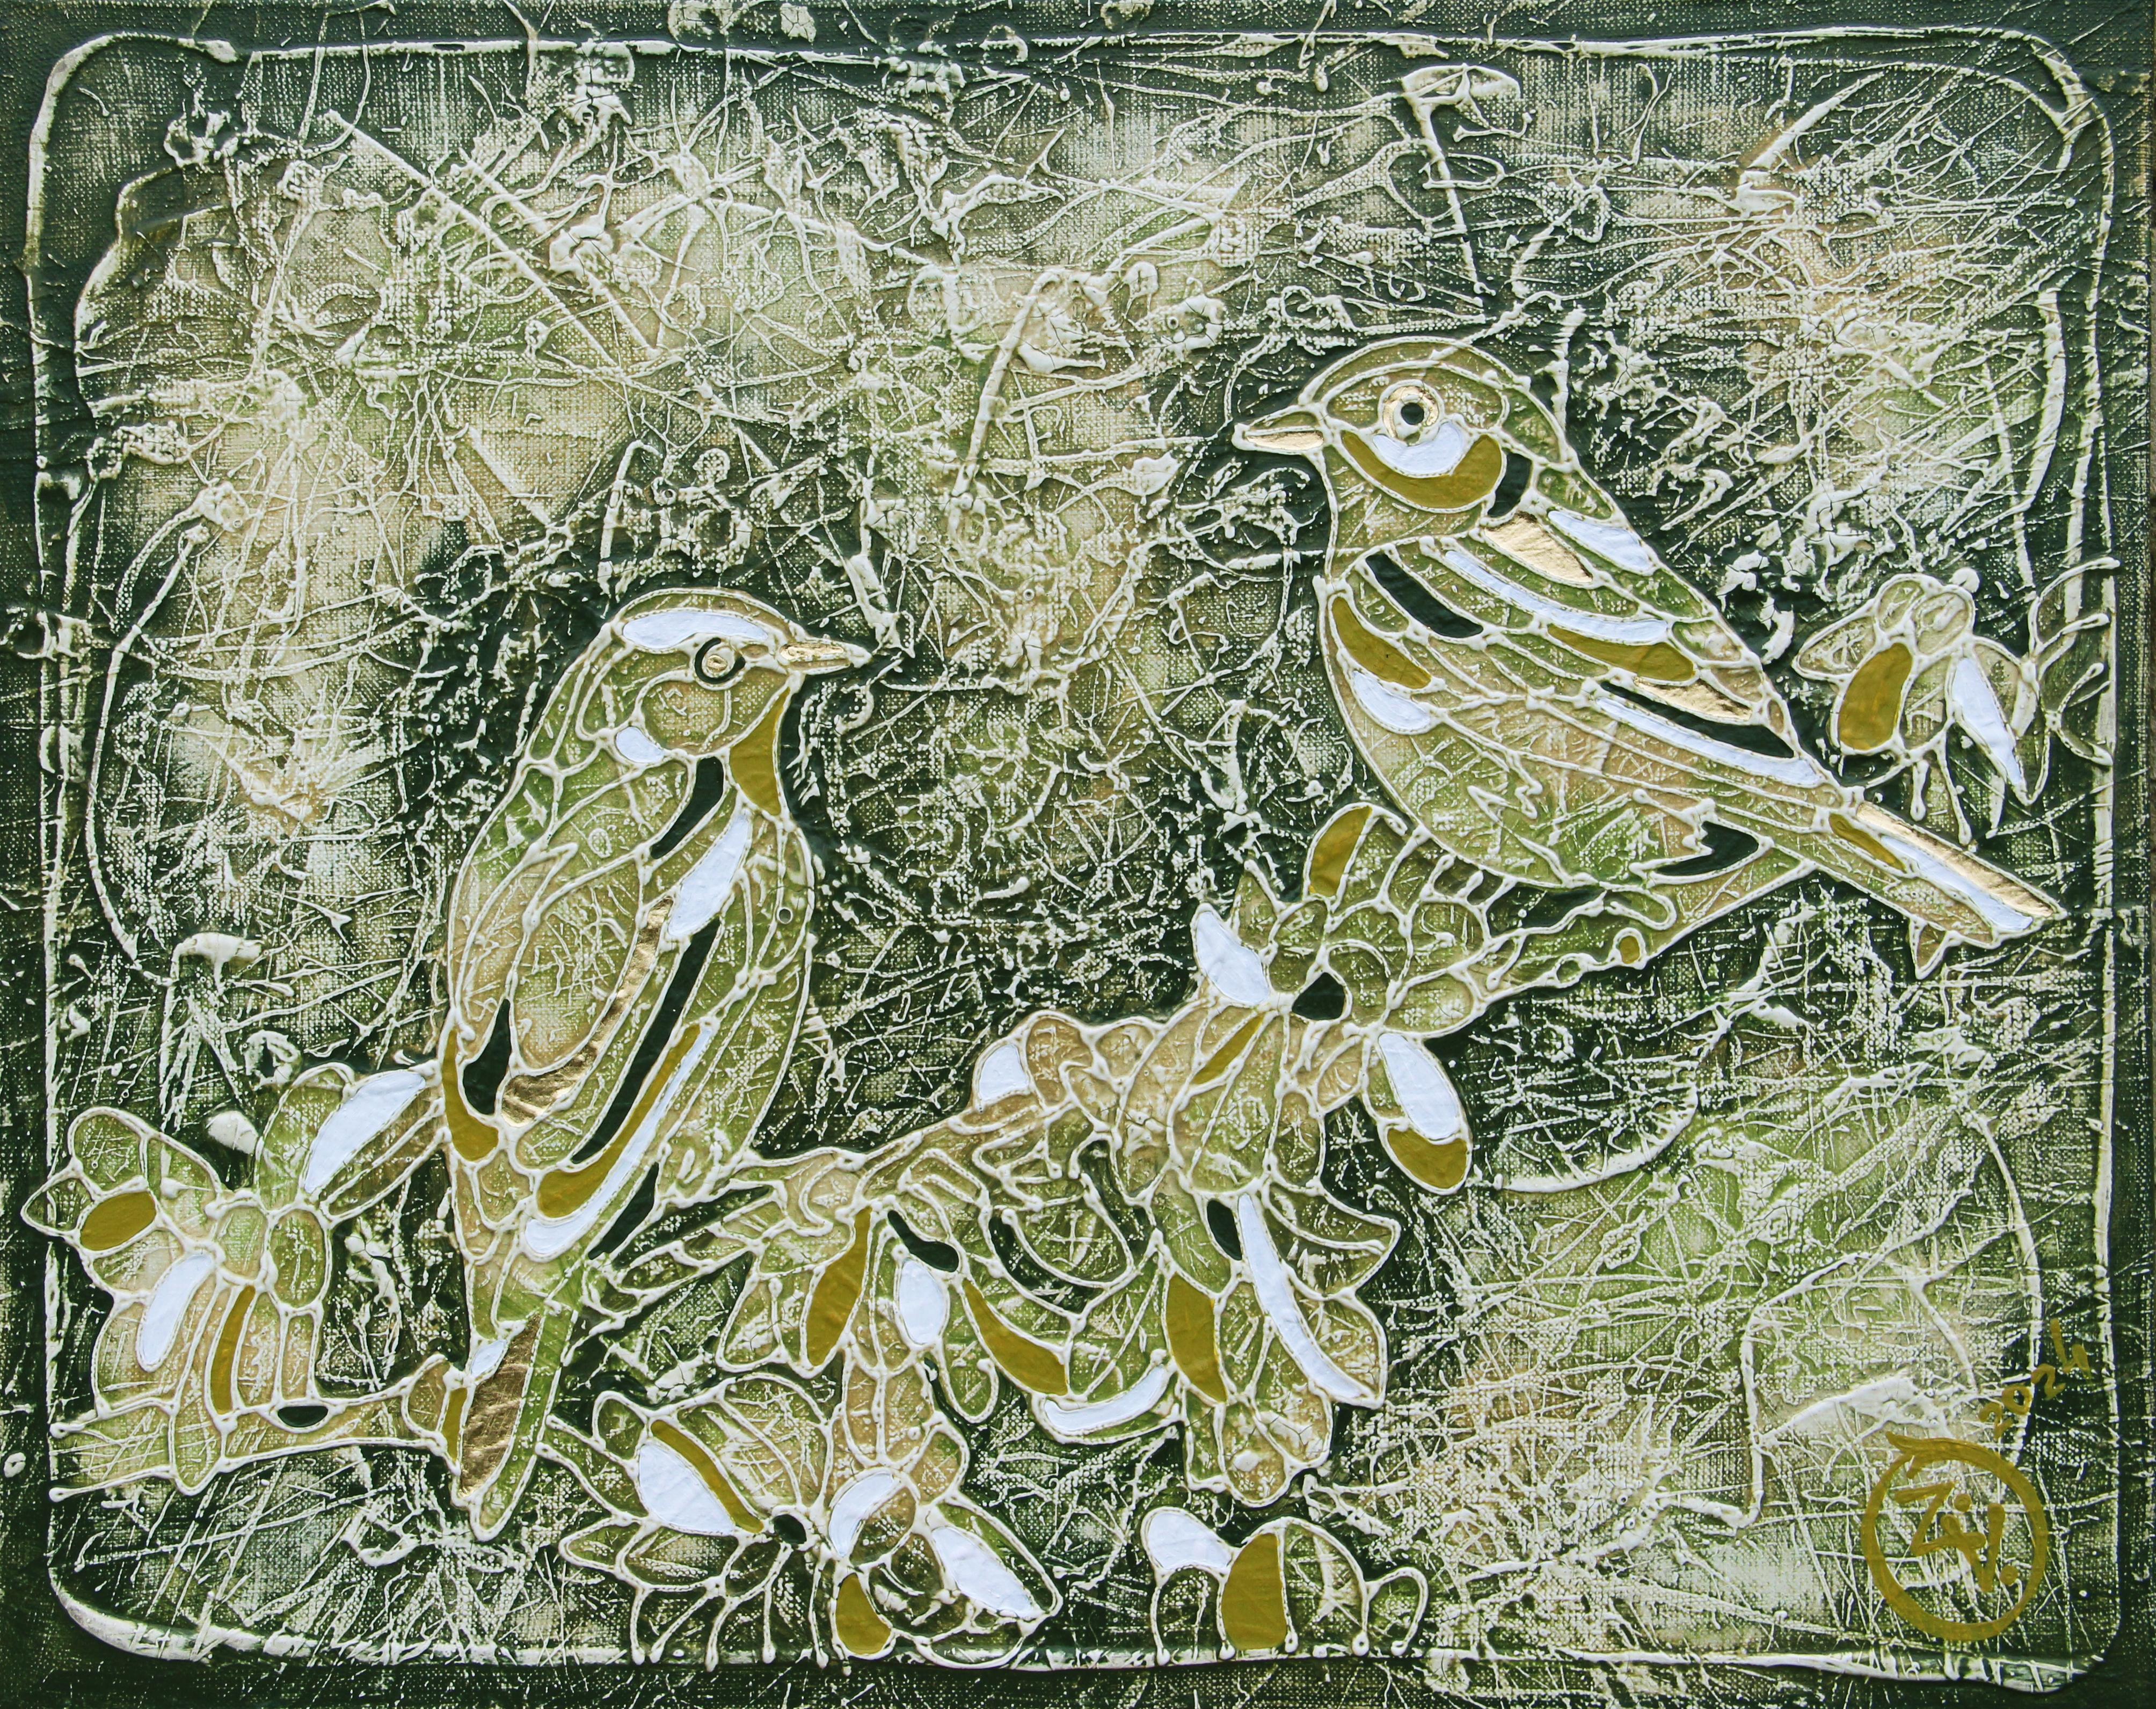 Die Farbe ist in der Technik des Autors der Malerei von Vasily Zianko basiert Acrylmalerei auf Leinwand mit einer Vielzahl von Texturen, wäscht, die feinste Lasur, volumetrische Kontur lesbar für blinde und sehbehinderte Menschen durch Berührung